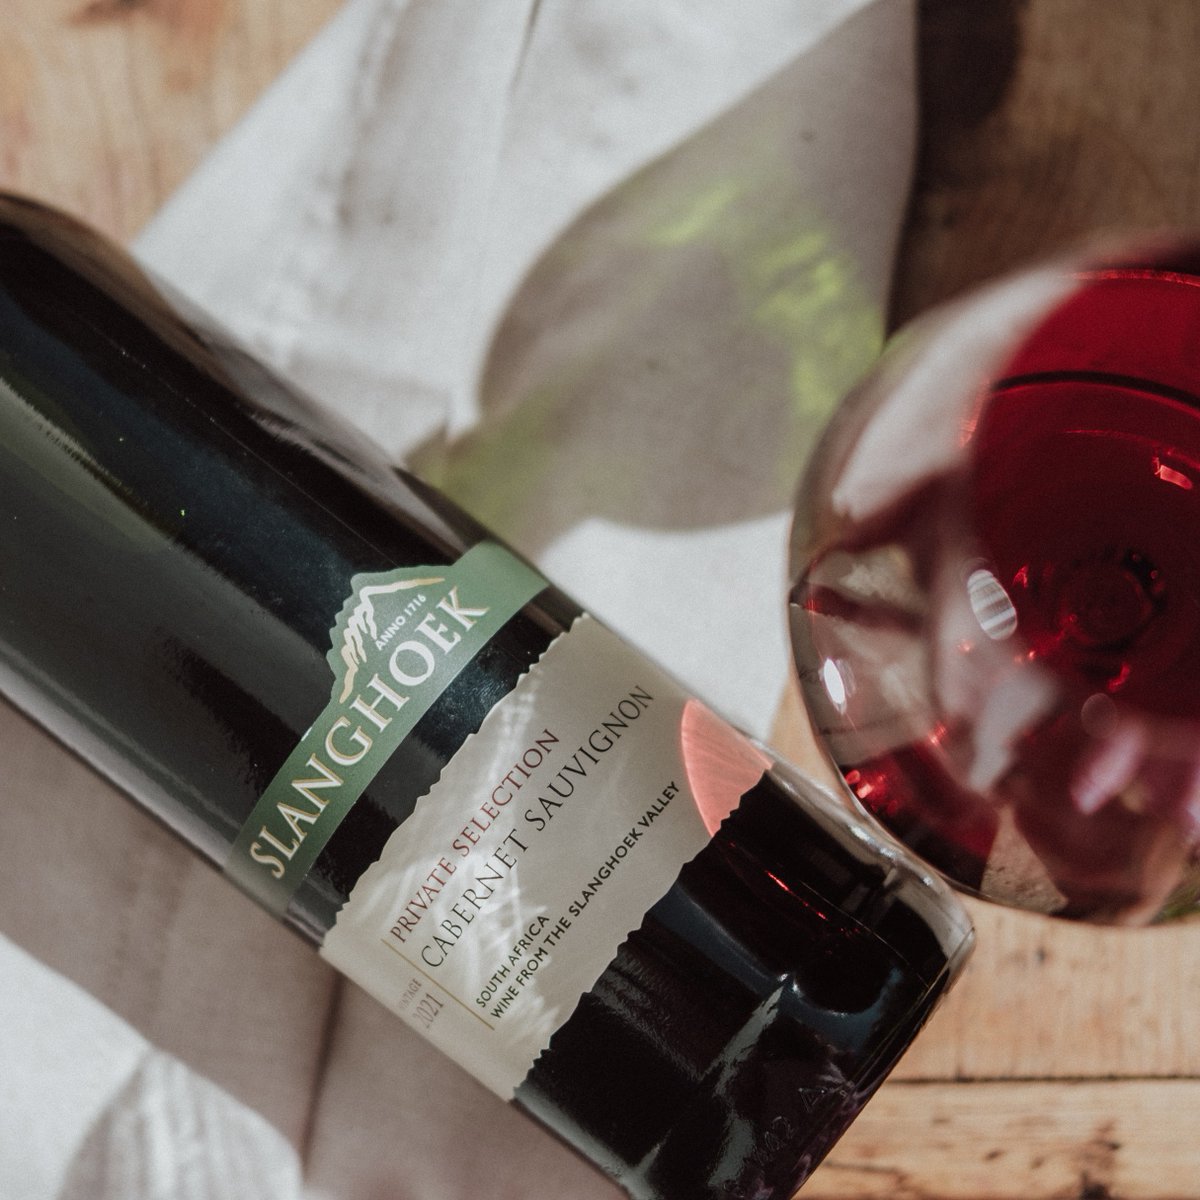 Looking for a mouthwatering pairing? Try Cabernet Sauvignon with a juicy Grilled Ribeye Steak! 🍷🥩

#winelover #slanghoek #breedekloof #wine #redwine #CabSav #vinay #winetasting #winestagram #winery #winepairing #wineoclock #winefarm #sommelier #vinho